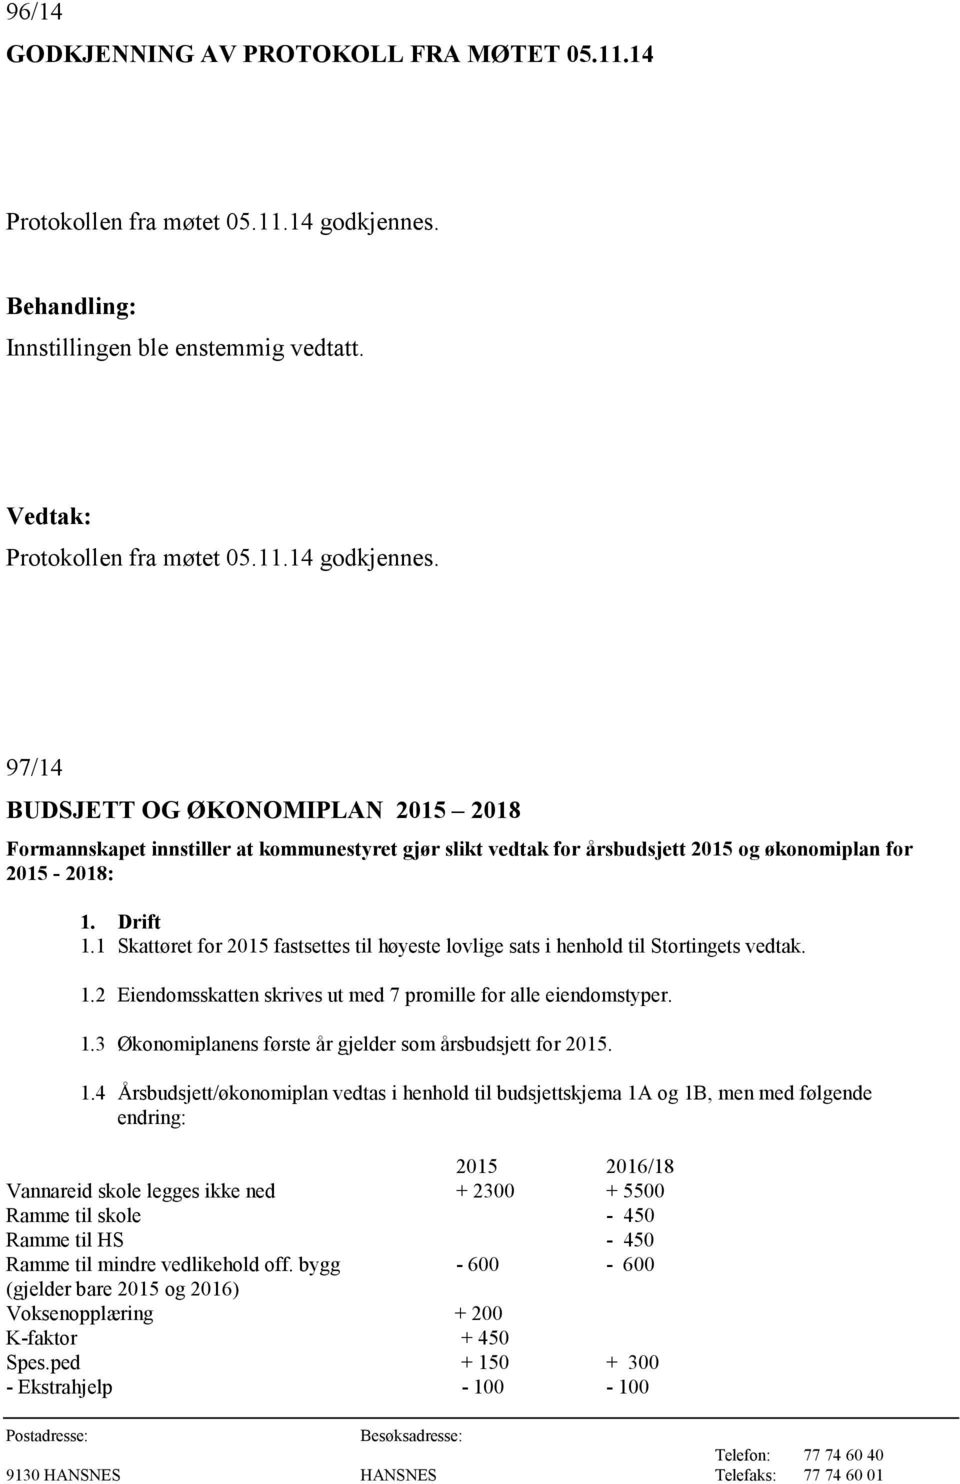 97/14 BUDSJETT OG ØKONOMIPLAN 2015 2018 Formannskapet innstiller at kommunestyret gjør slikt vedtak for årsbudsjett 2015 og økonomiplan for 2015-2018: 1. Drift 1.